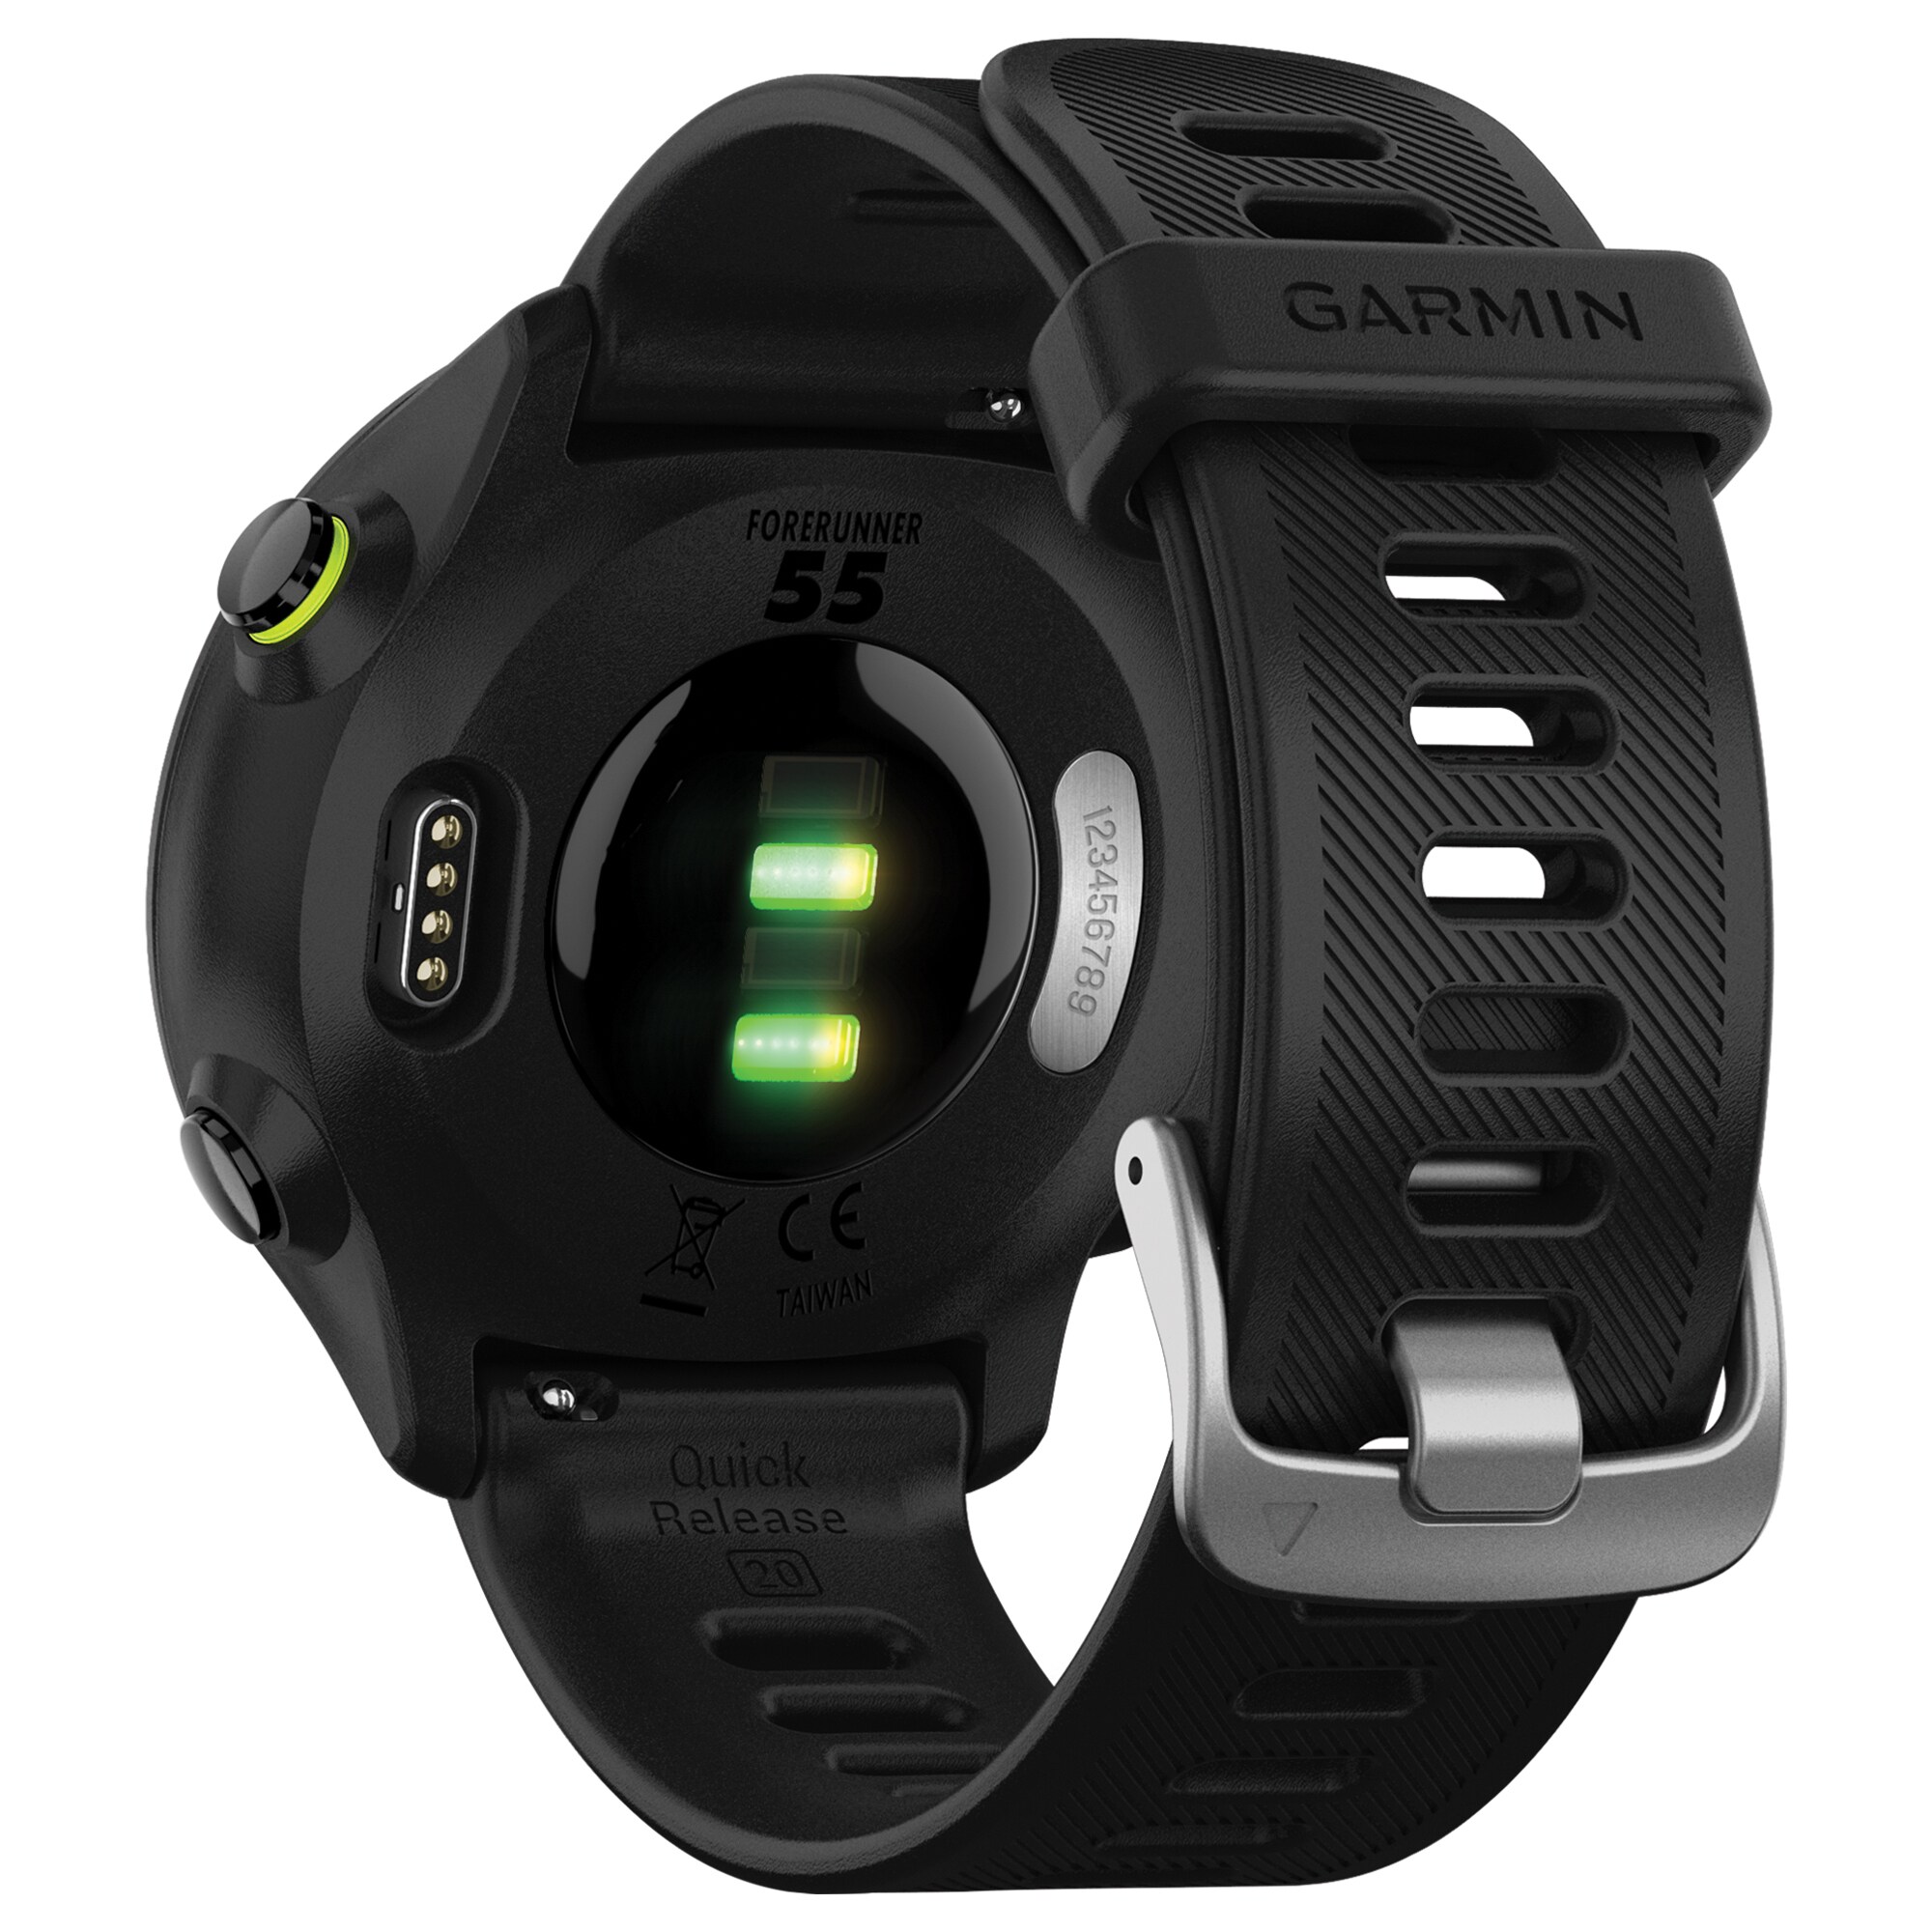 Garmin Forerunner 55 – Terrific GPS-running watch – Read more here